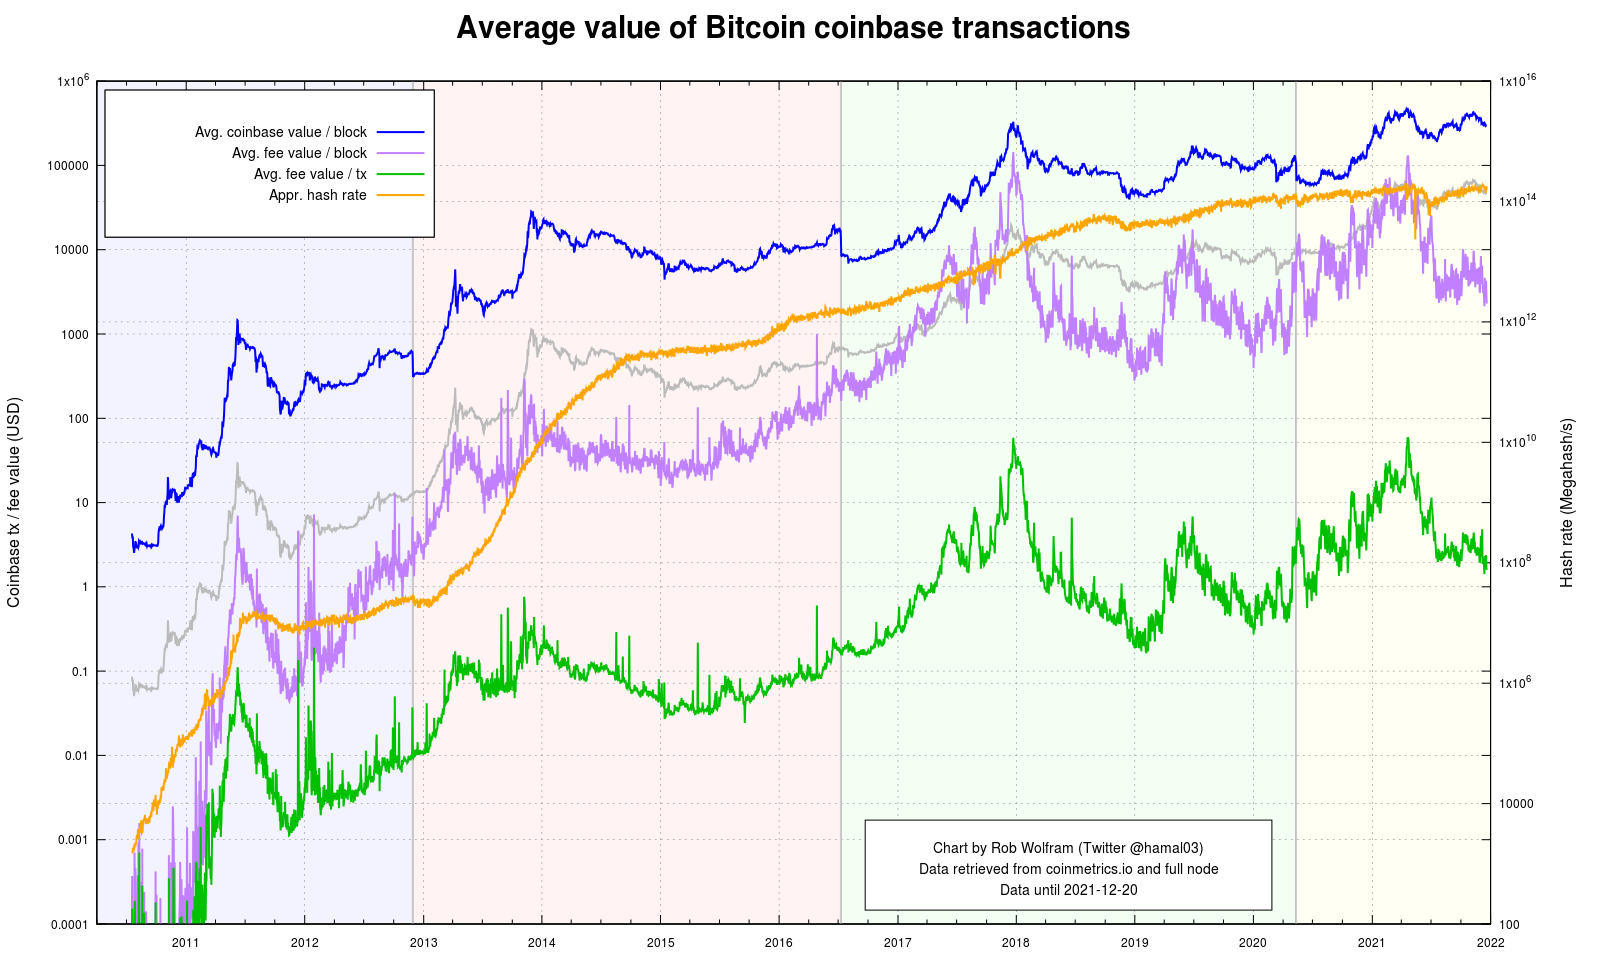 coinbase price prediction